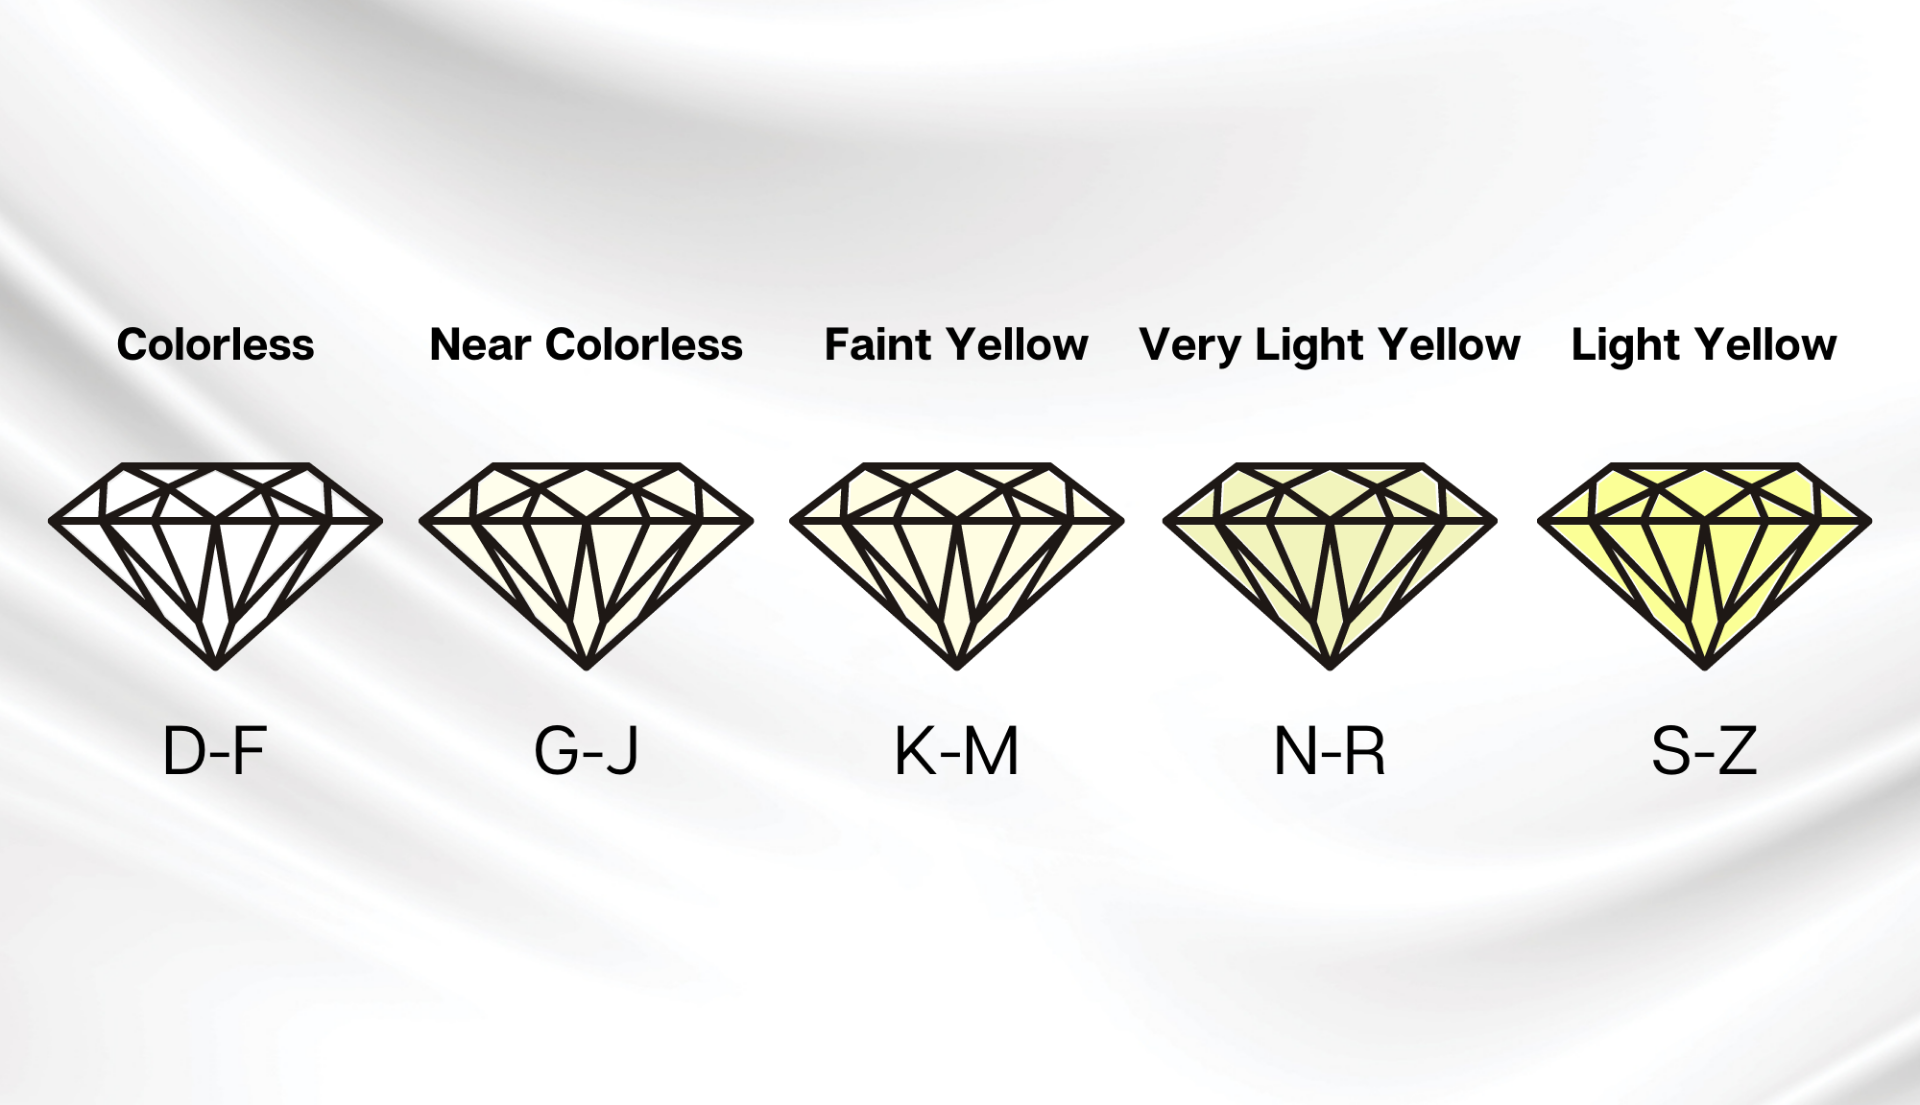 Diamond Color Grading Scale